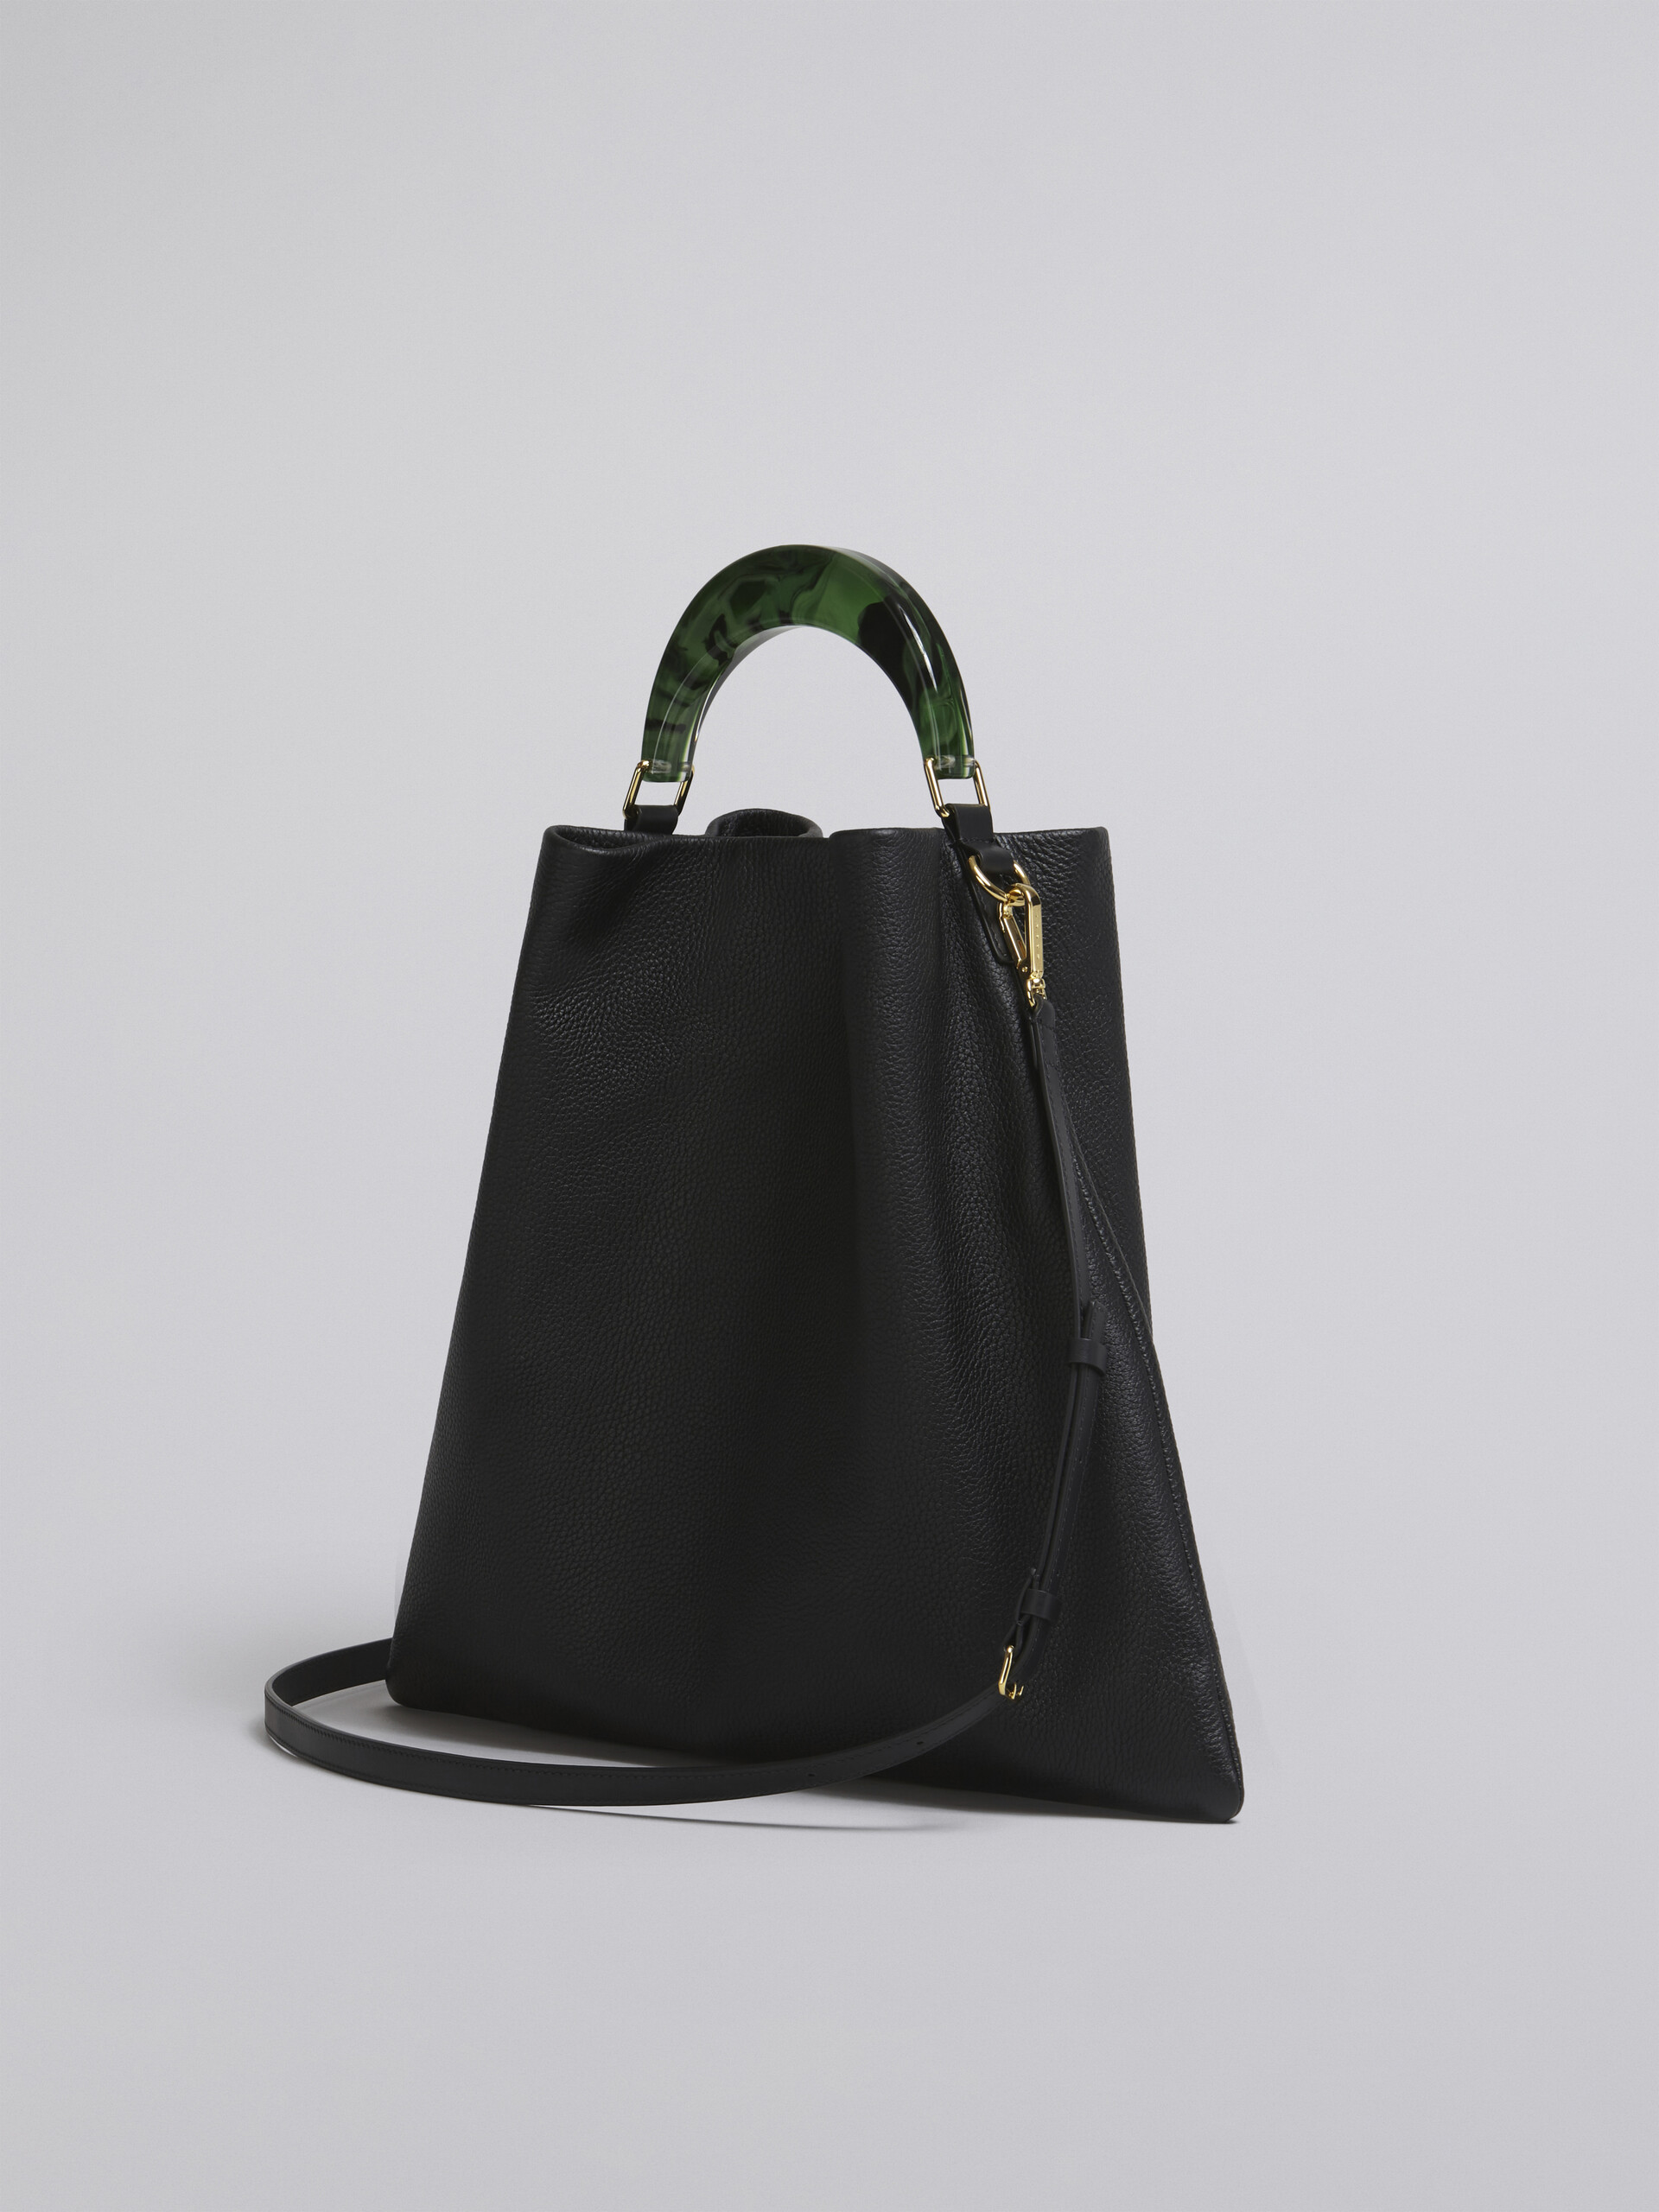 HOBO bag in black grained calfskin and resin handle - Shoulder Bag - Image 3